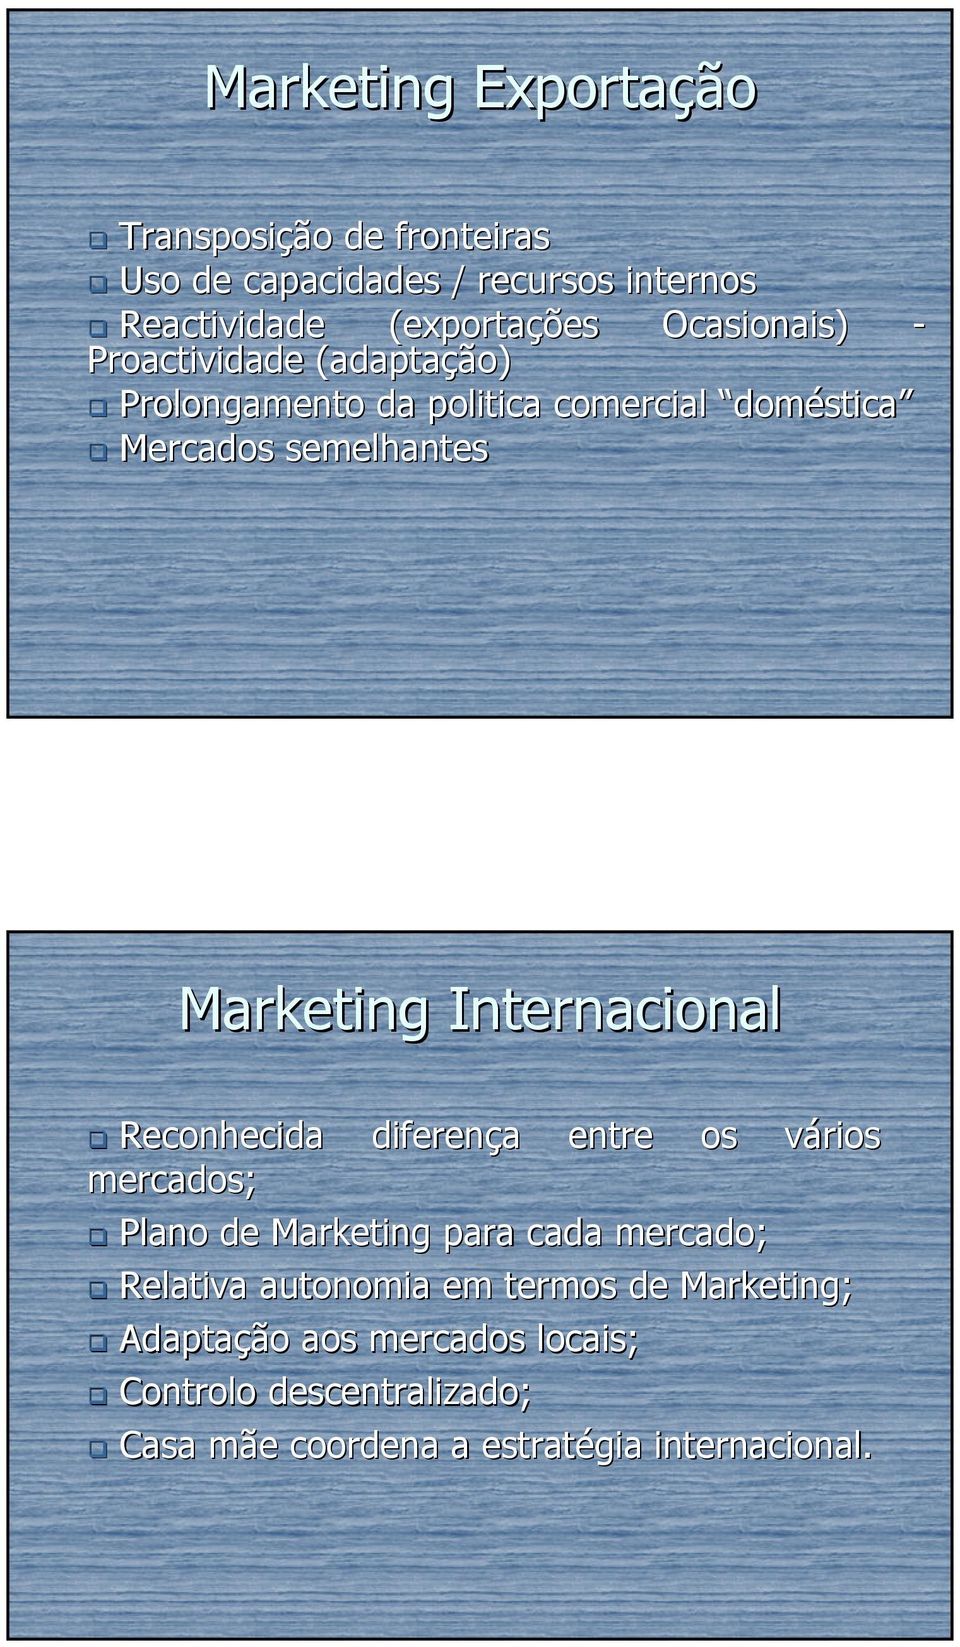 Internacional Reconhecida diferença a entre os vários v mercados; Plano de Marketing para cada mercado; Relativa